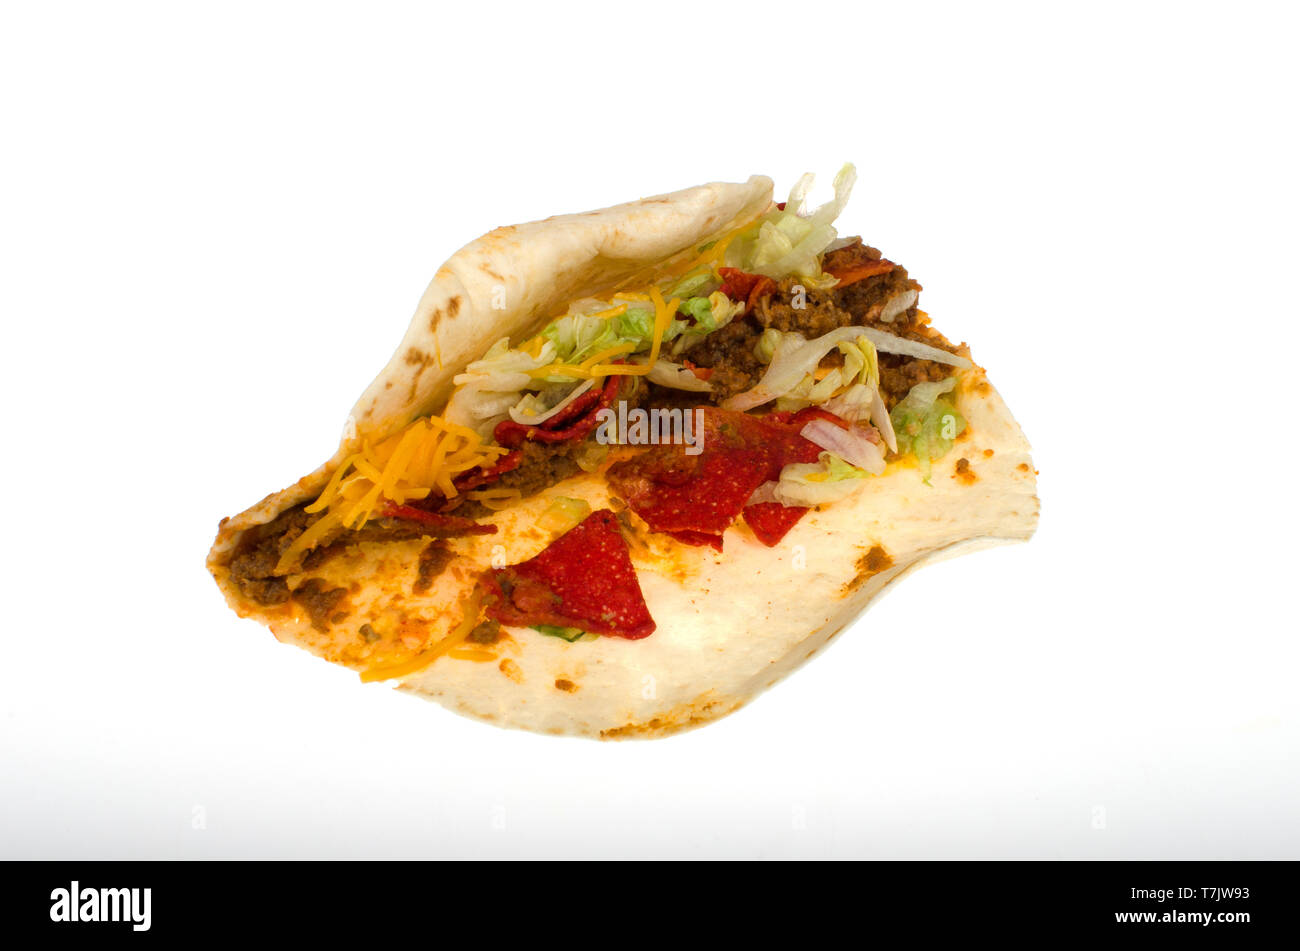 Taco Bell weich würzig geladen Nacho Taco auf weißem Hintergrund Stockfoto